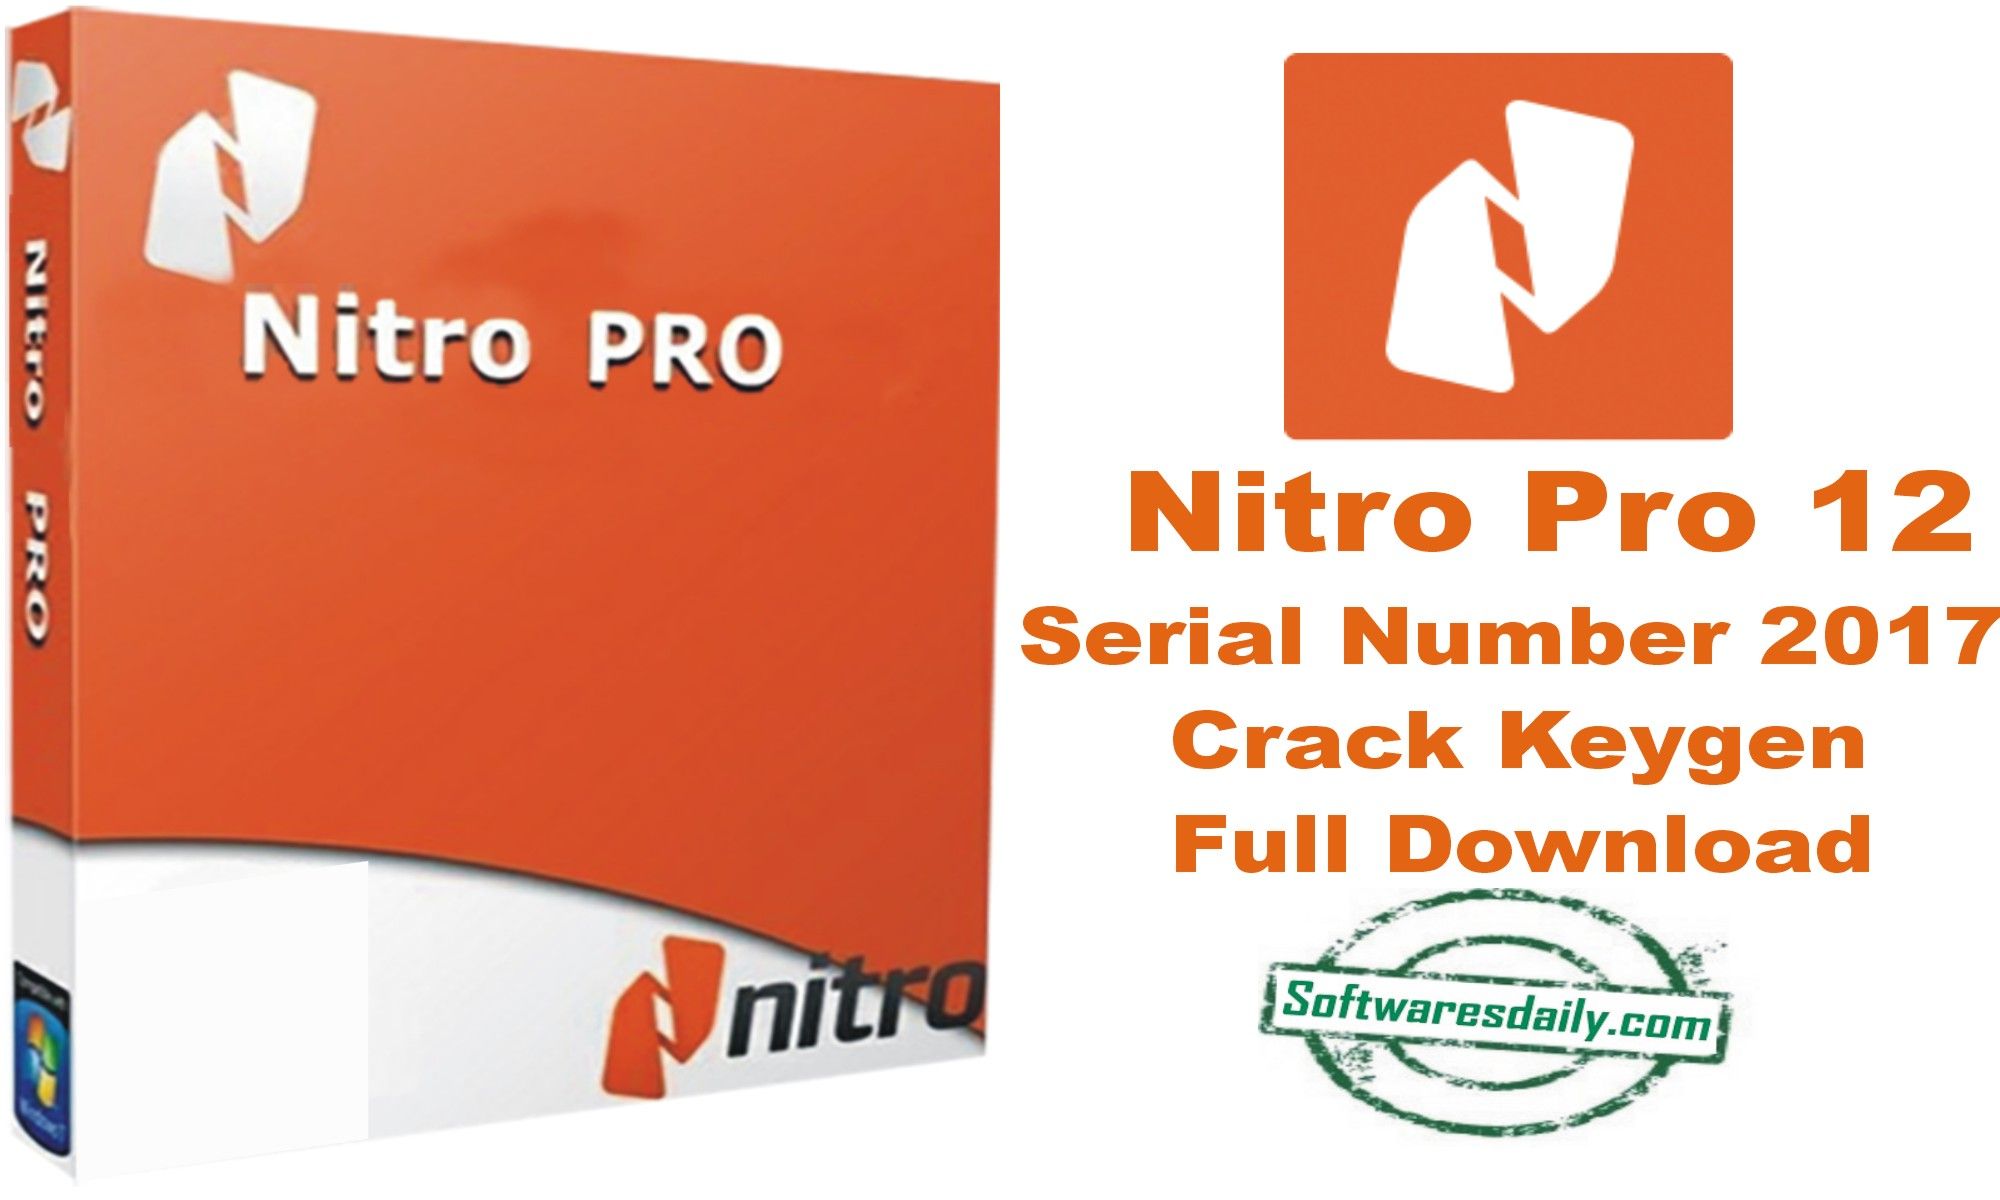 nitro pro 10 pdf editor creator software download